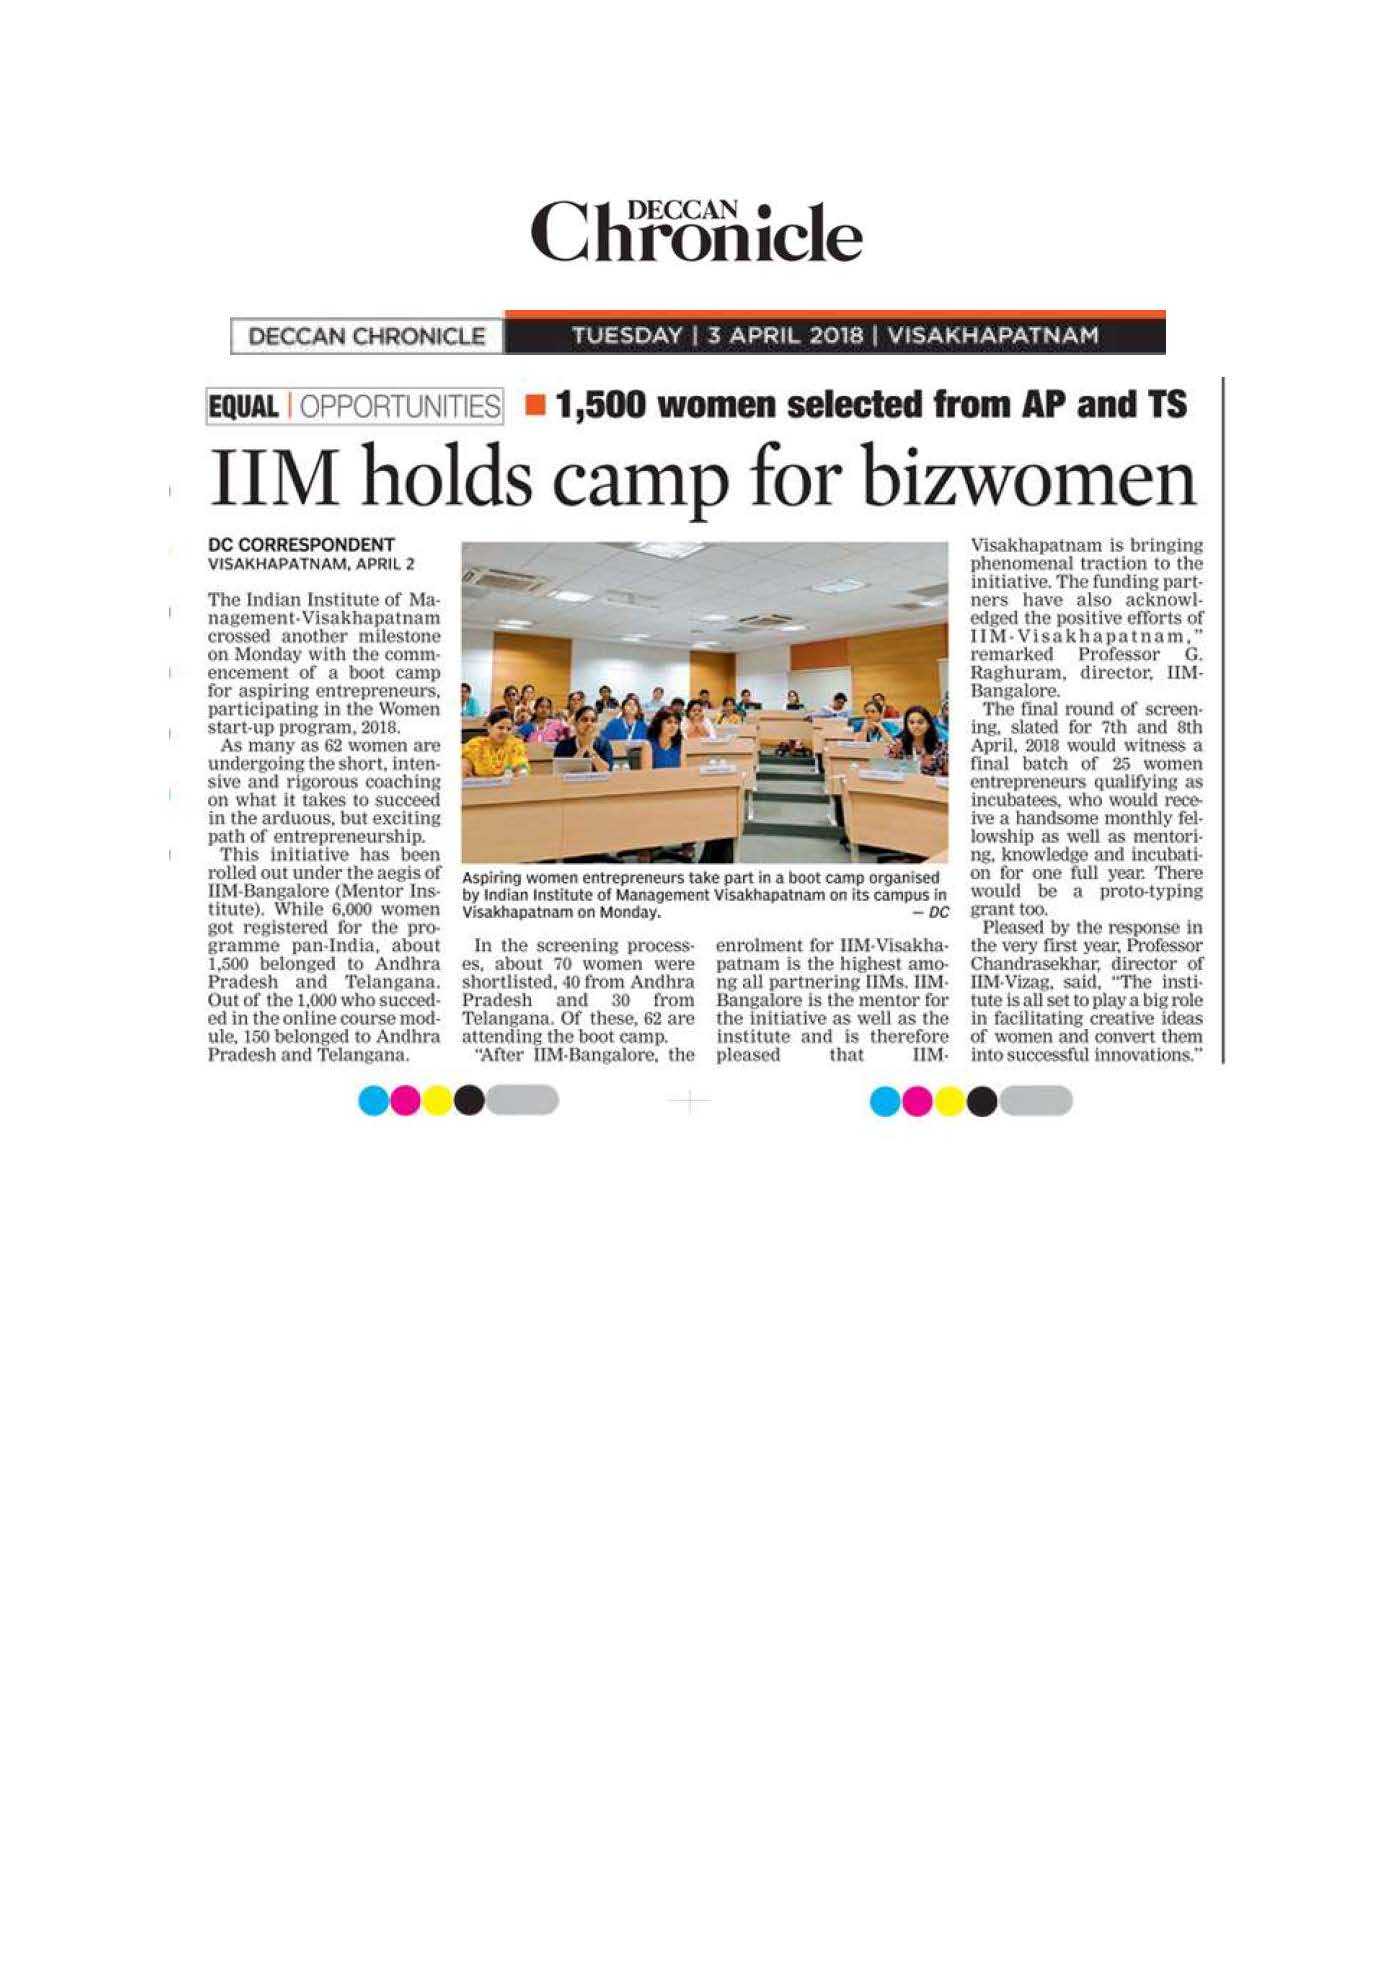 IIM holds camp for bizwomen - 03.04.2018